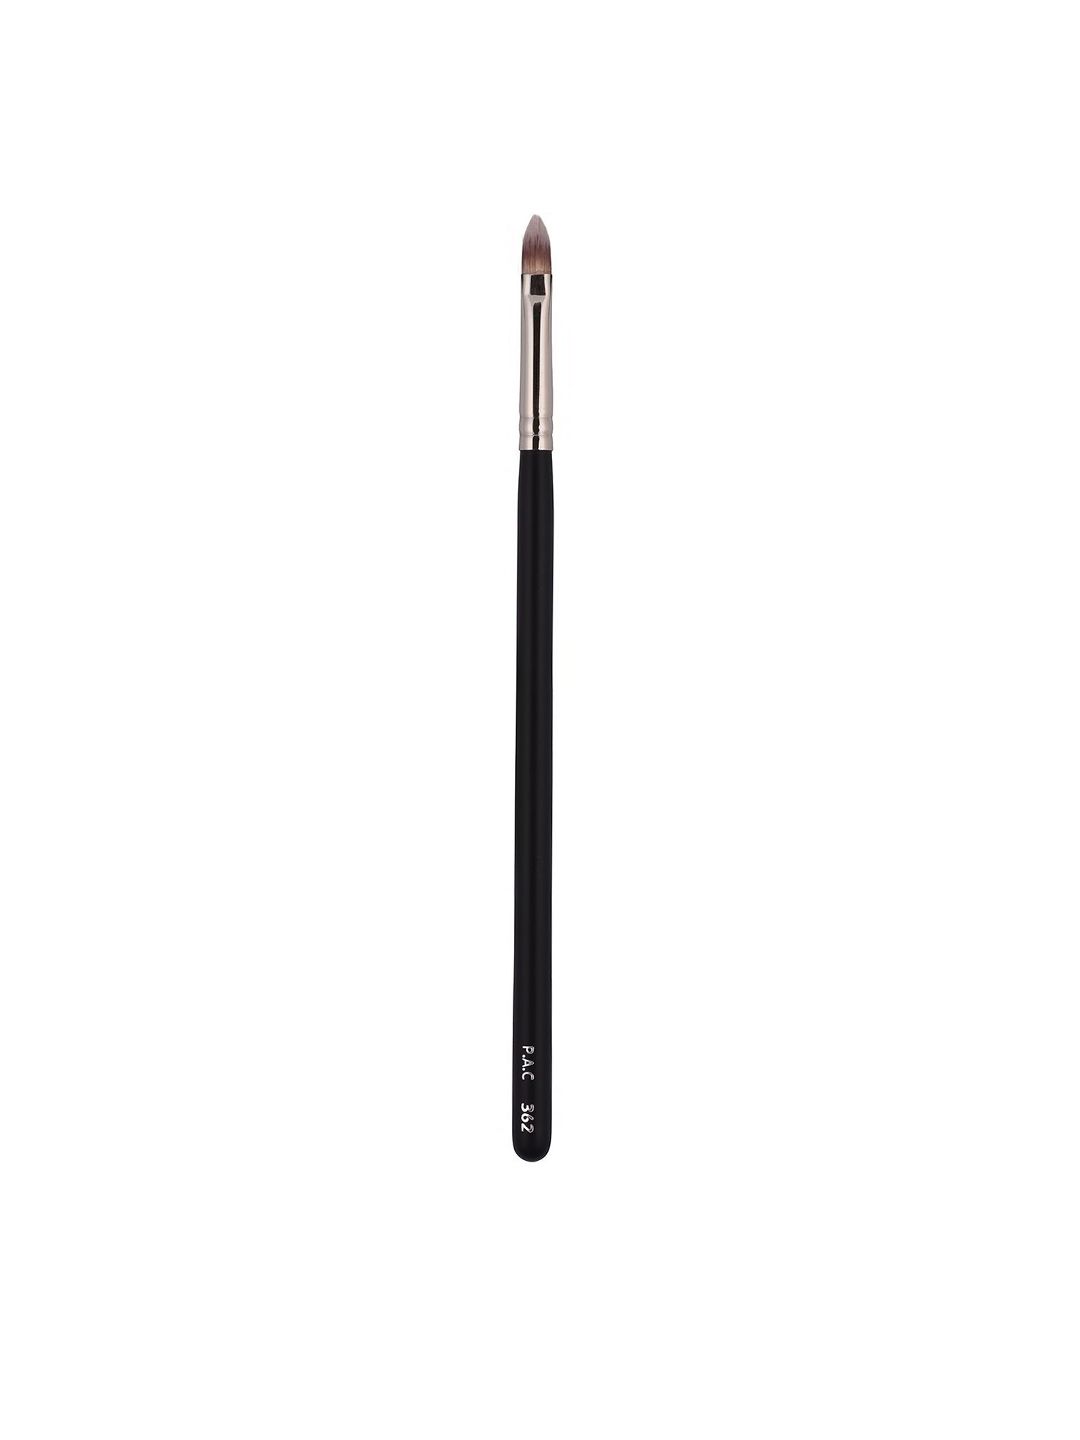 PAC Black Concealer Brush - 362 Price in India